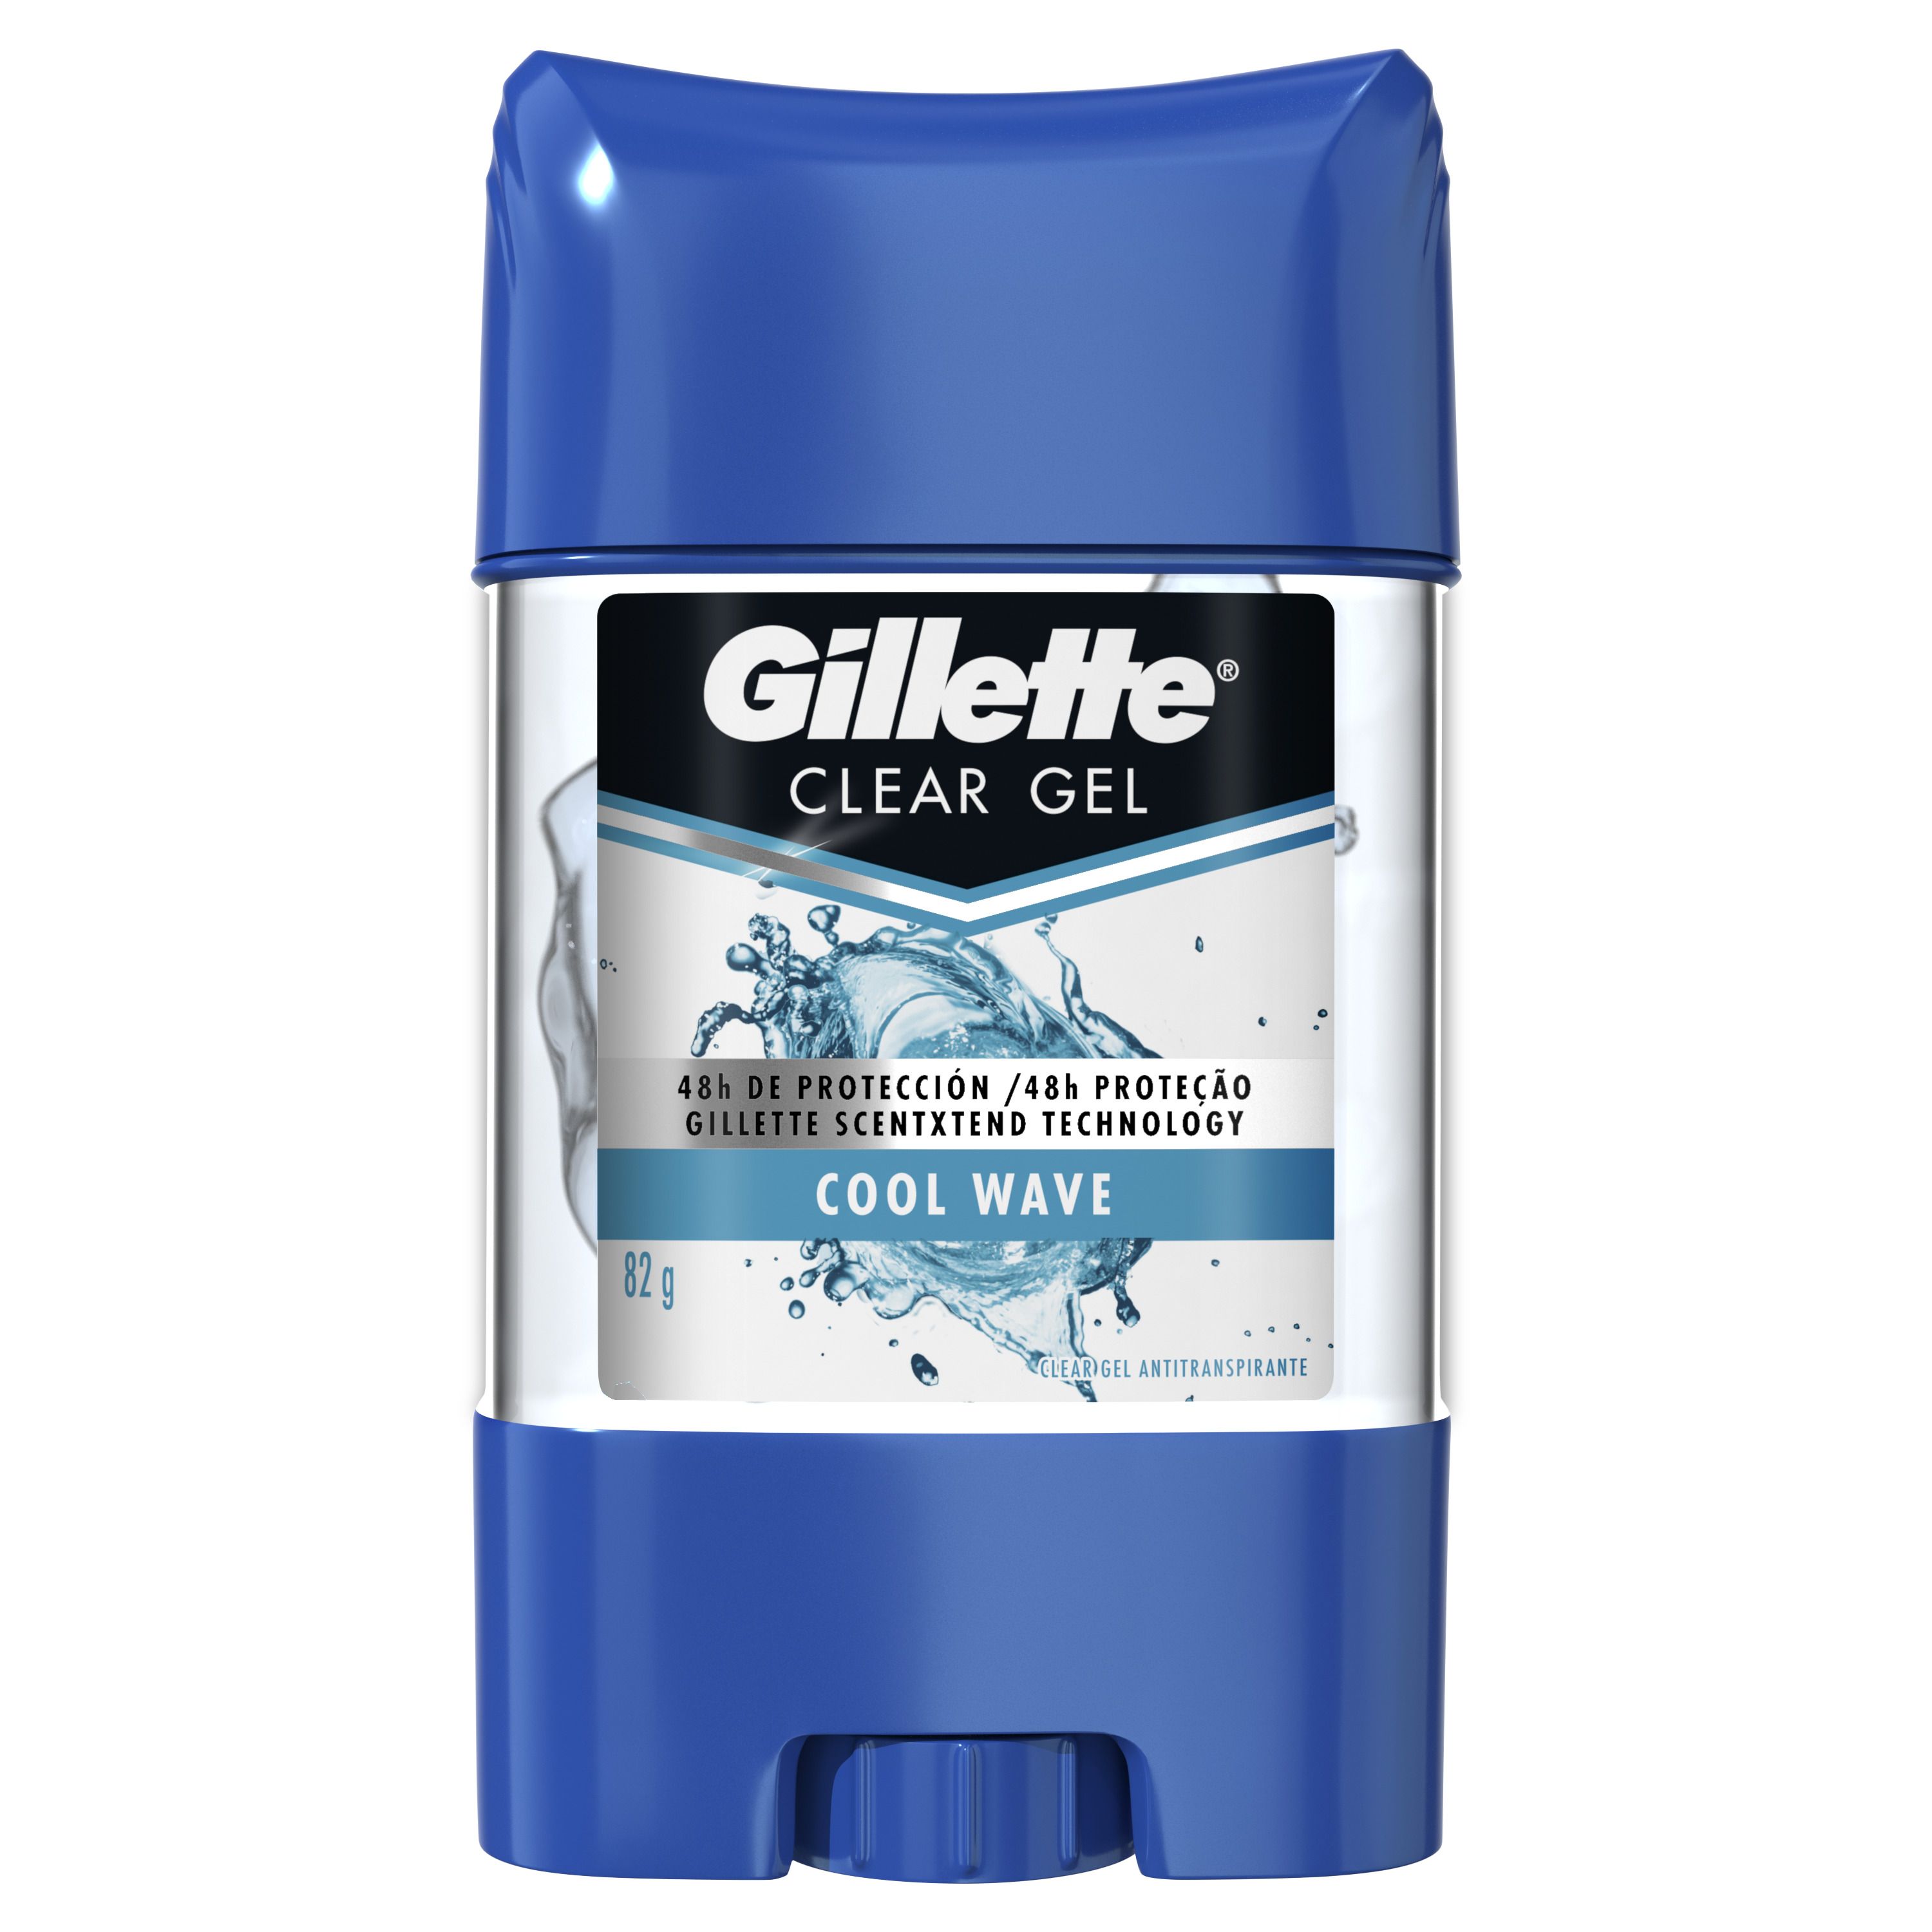 GILLETTE ANTIT EN BARRA GEL COOL WAVE X 82 G